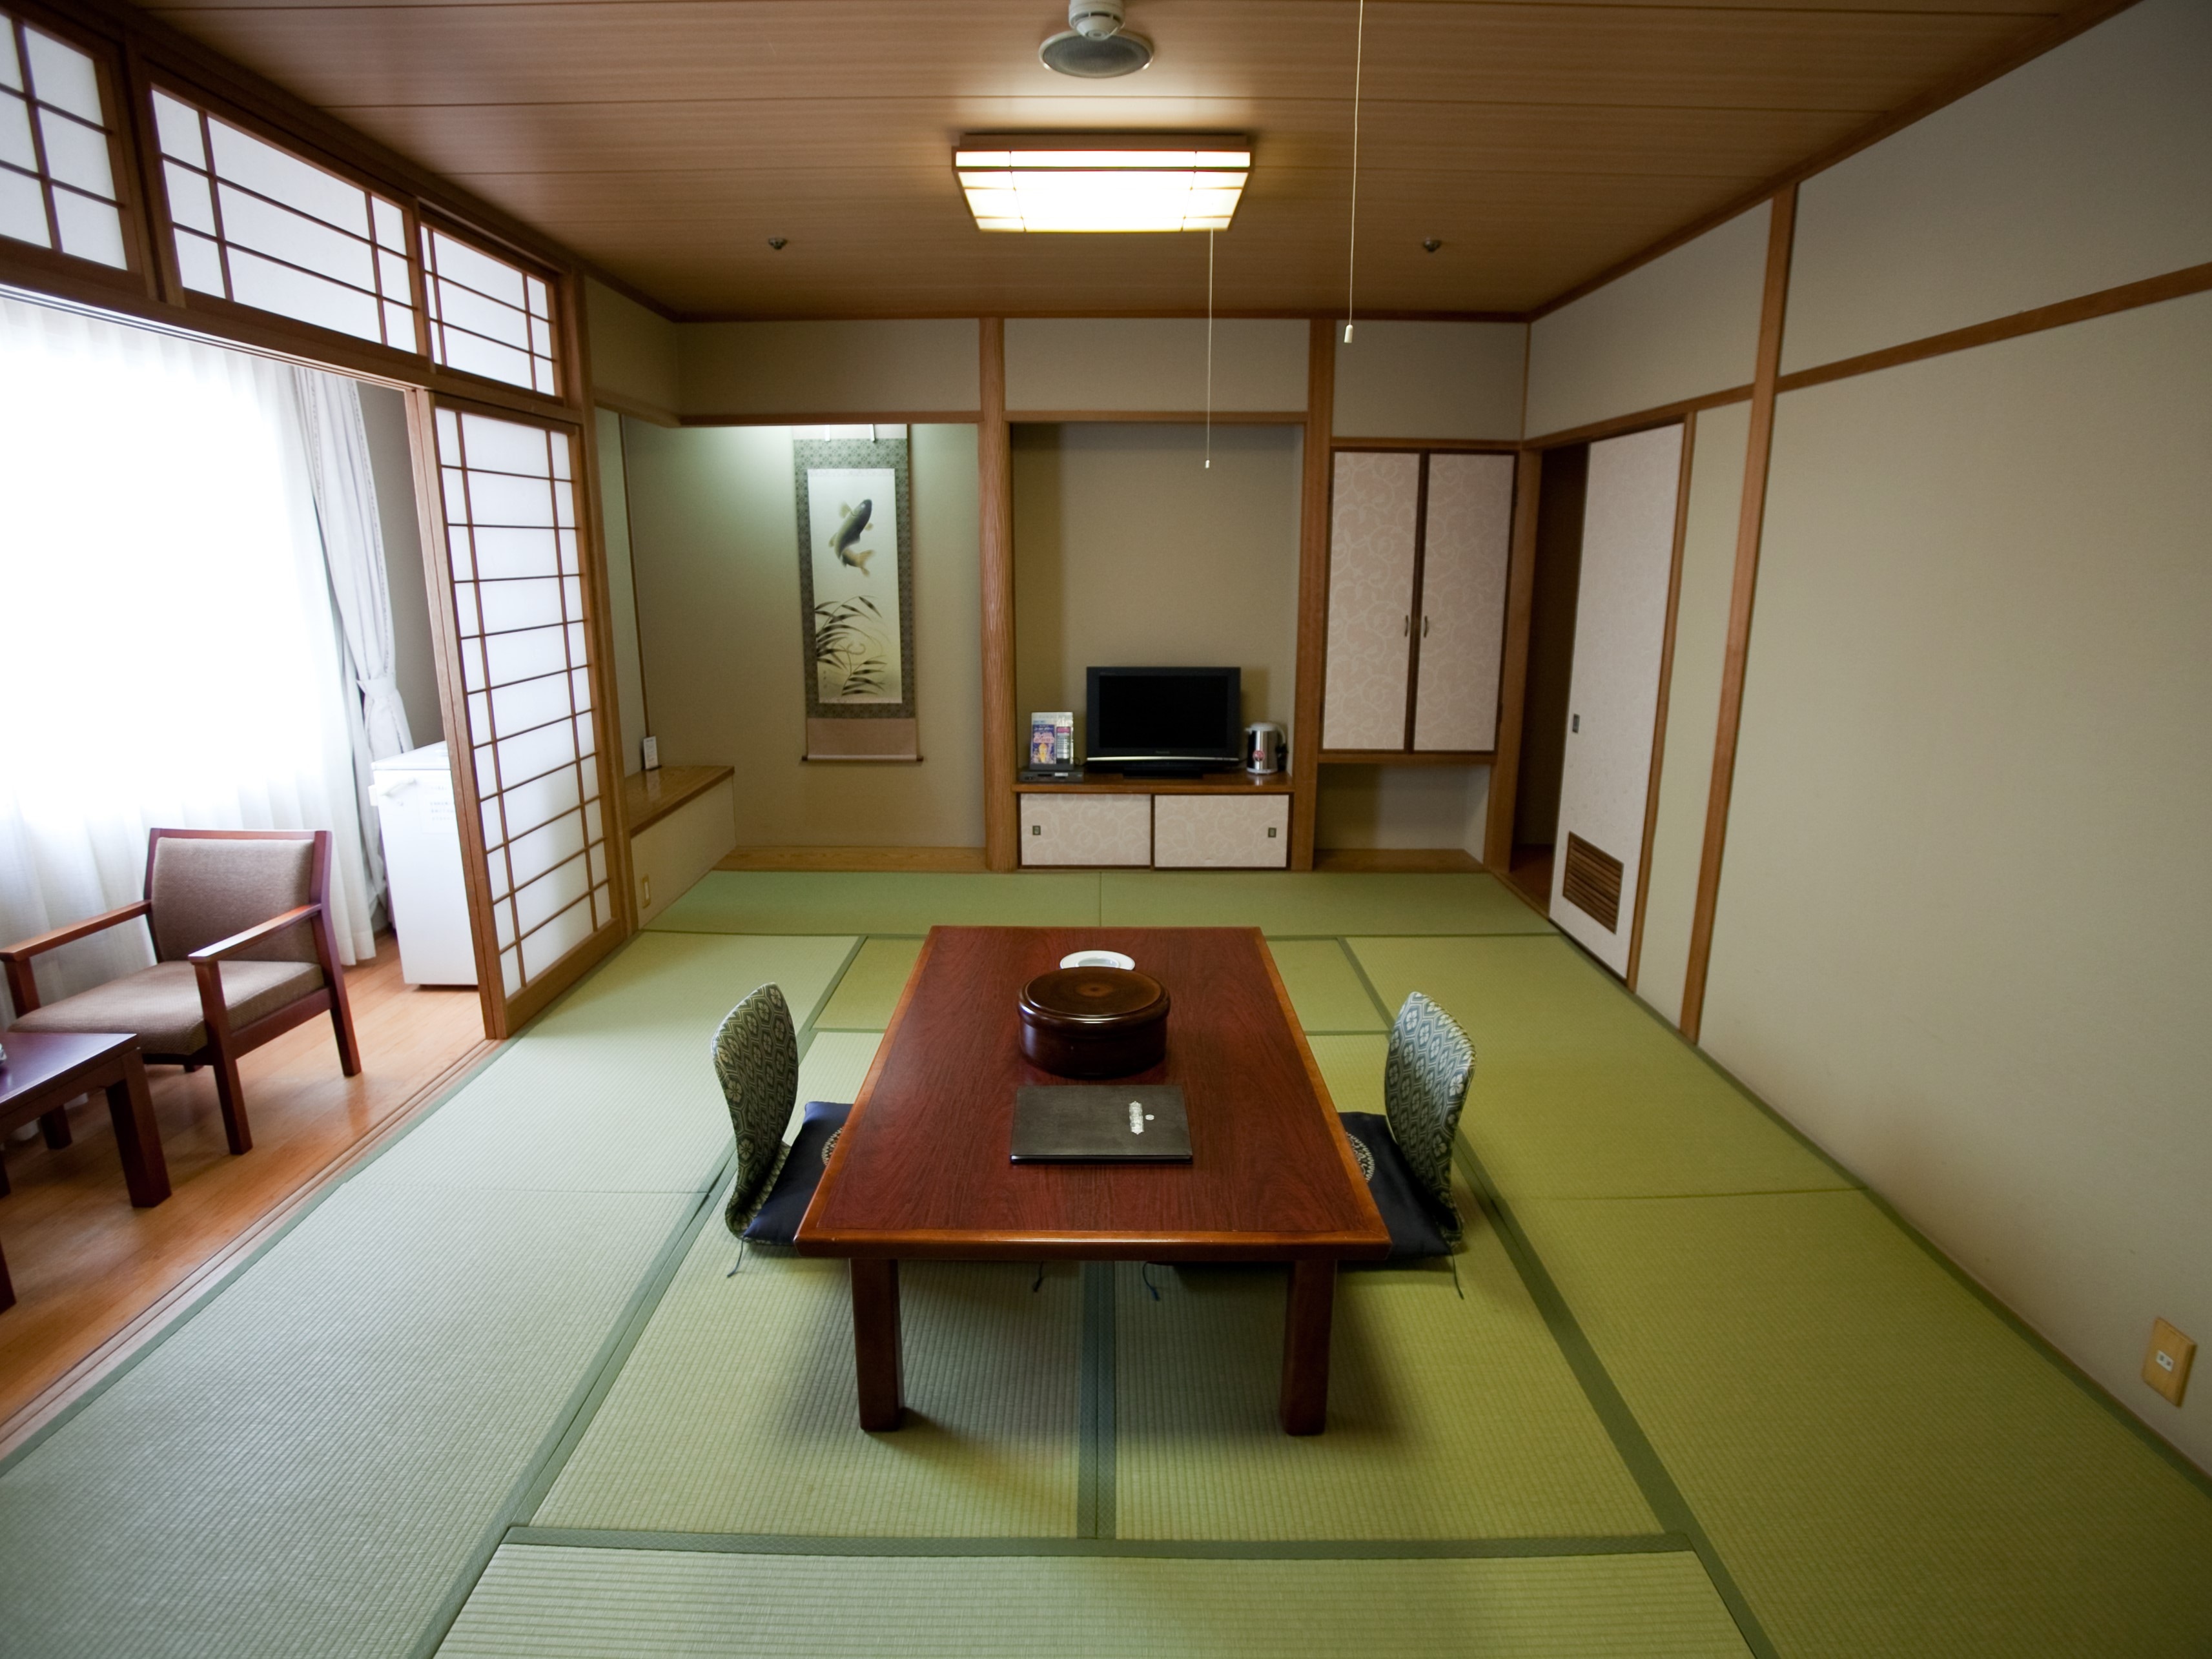 넓게 편히 쉴 수 있는 일본식 방